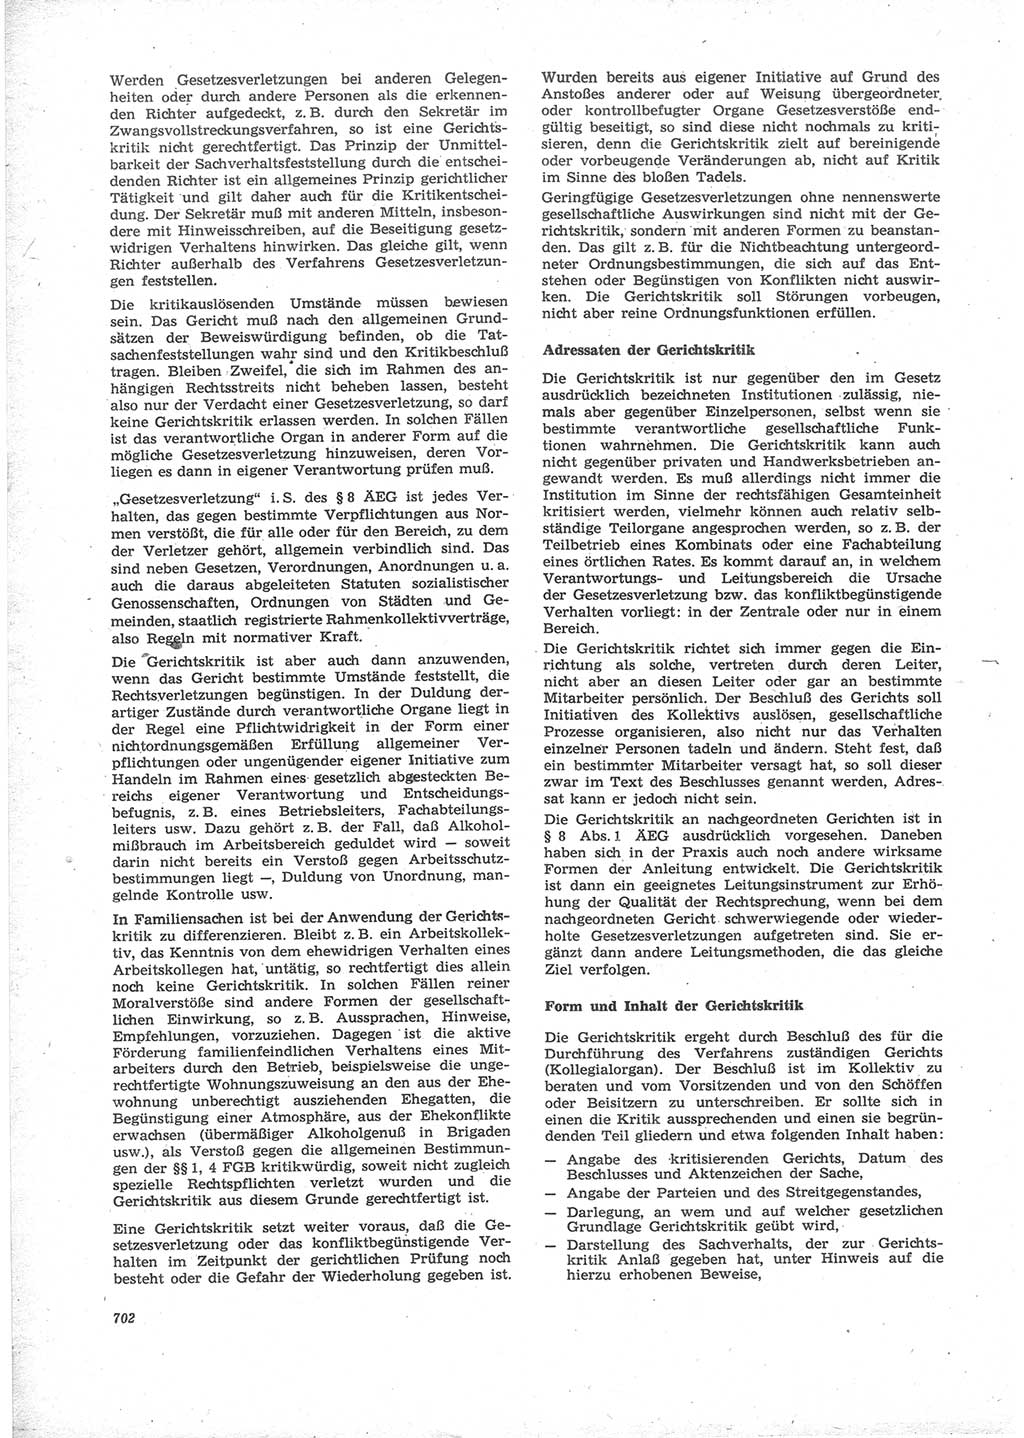 Neue Justiz (NJ), Zeitschrift für Recht und Rechtswissenschaft [Deutsche Demokratische Republik (DDR)], 24. Jahrgang 1970, Seite 702 (NJ DDR 1970, S. 702)